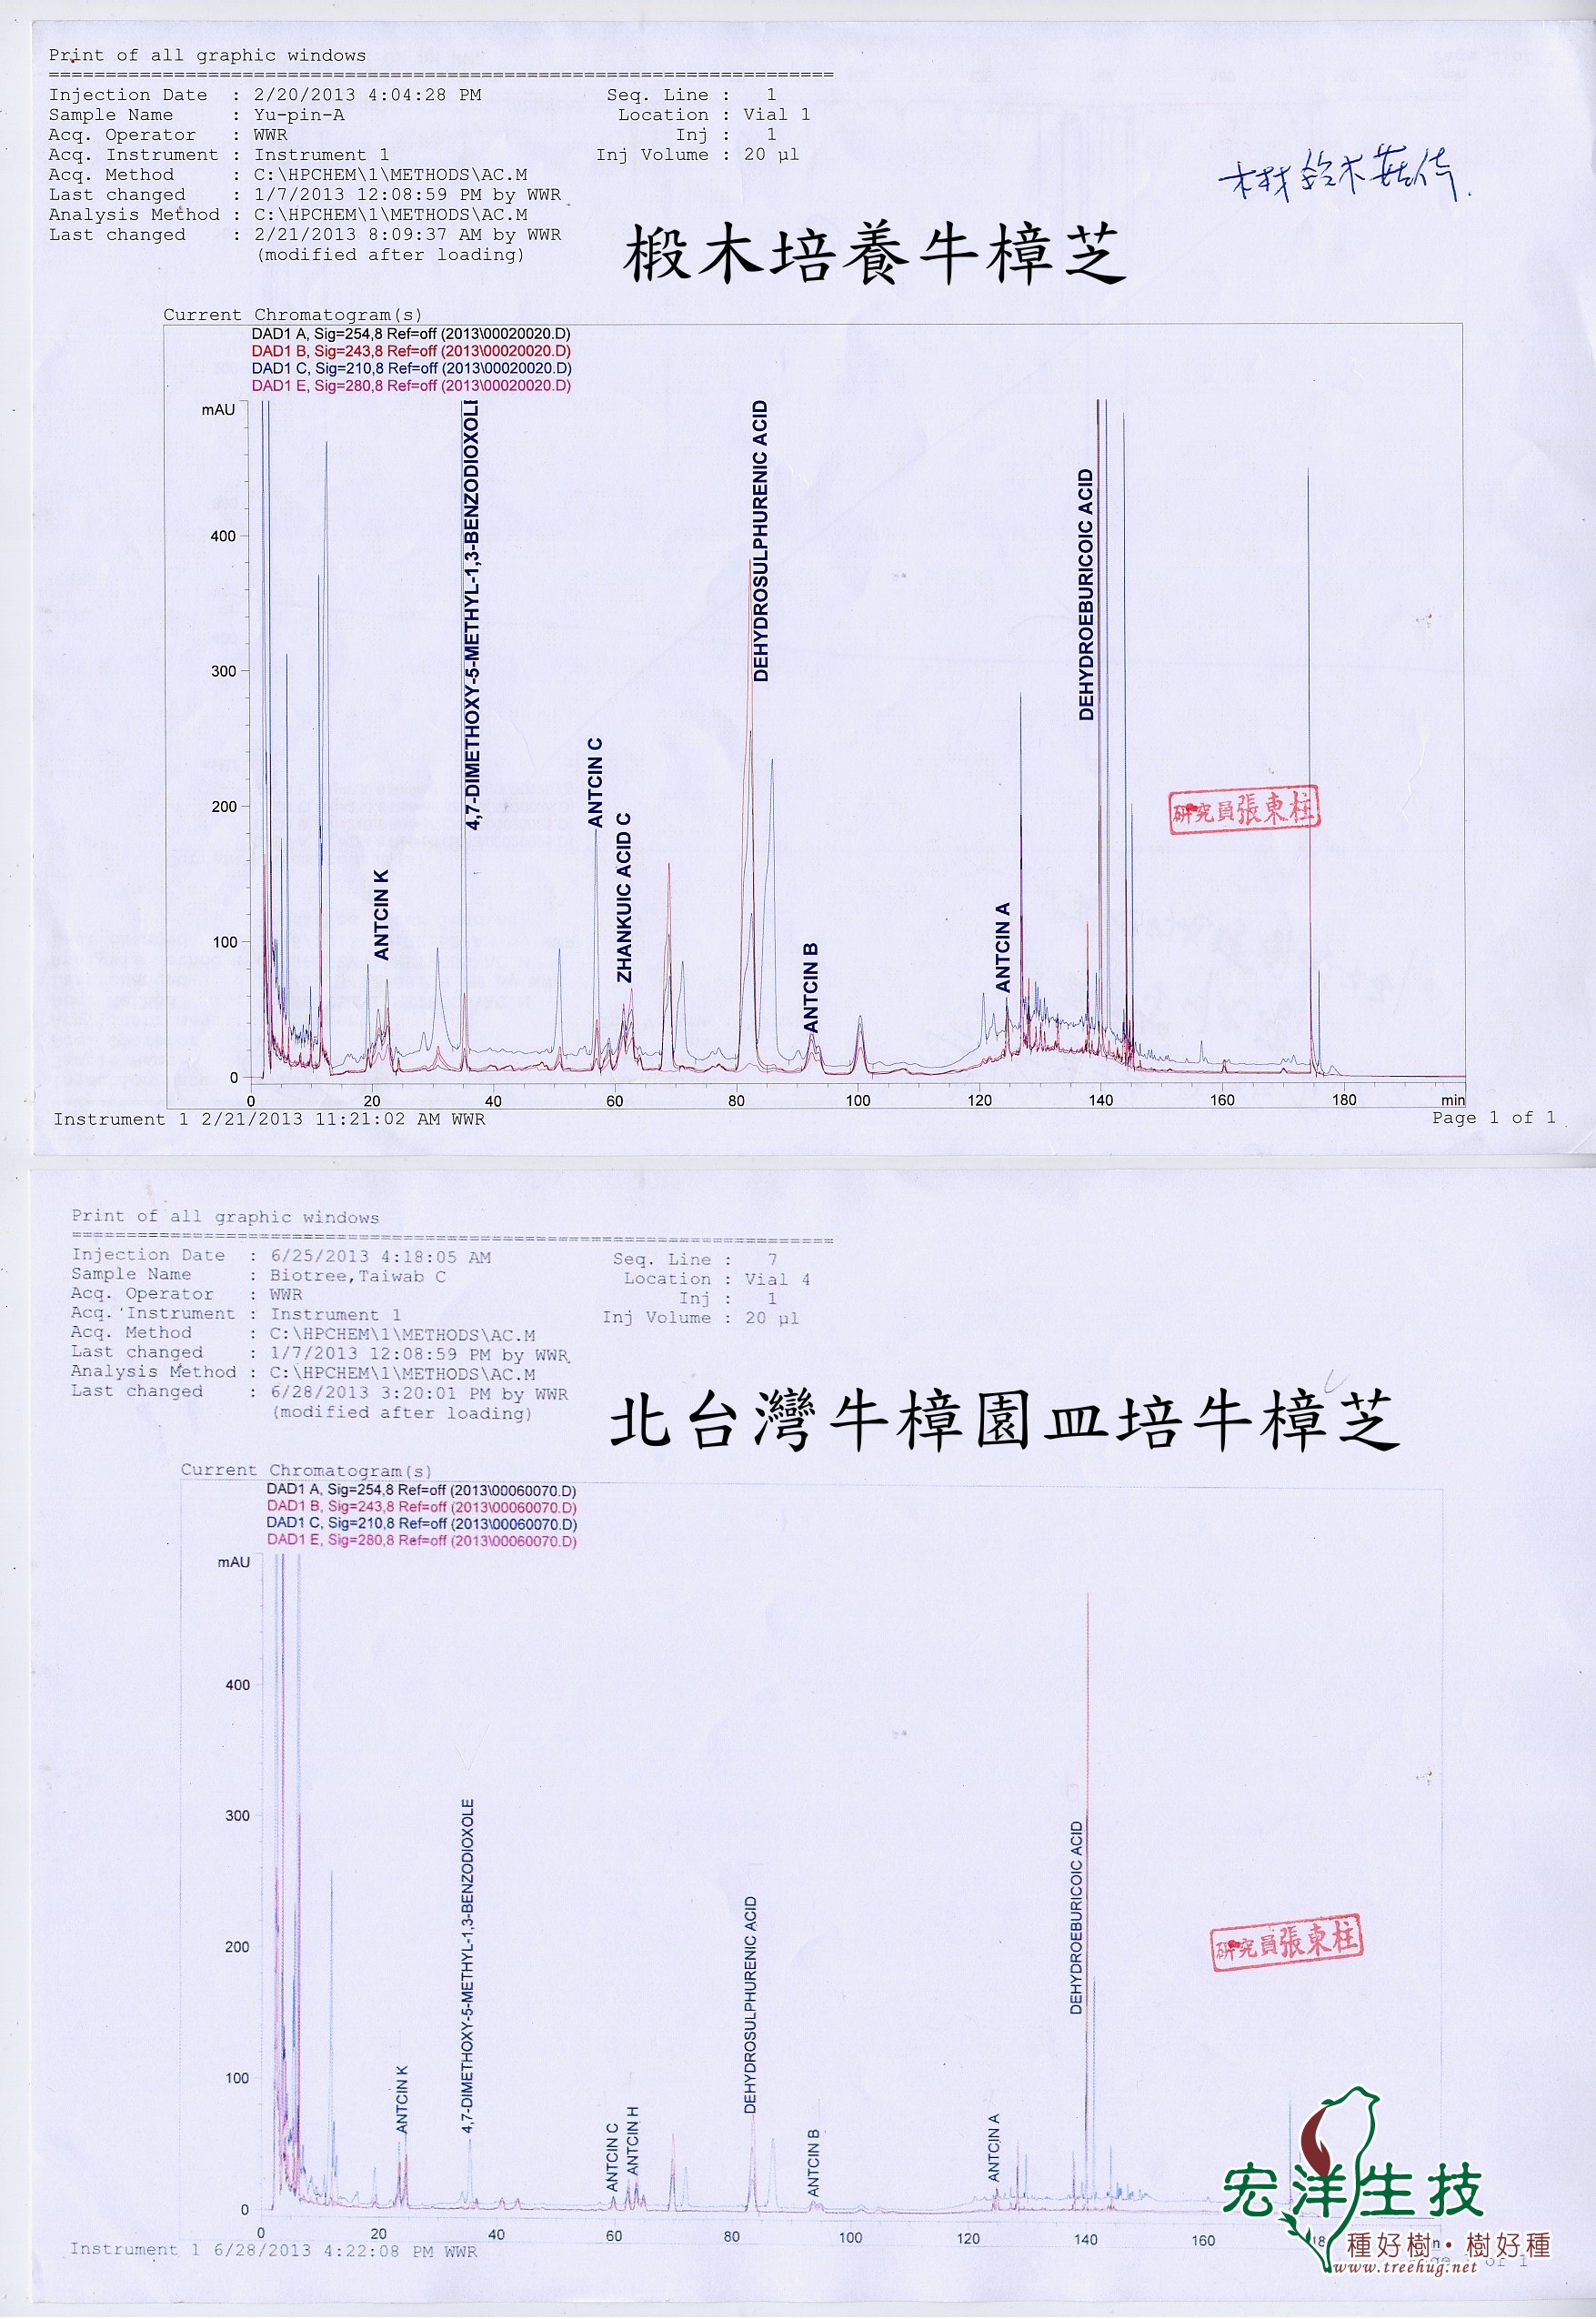 北台灣牛樟園皿培牛樟芝與椴木牛樟芝成分分析比較圖